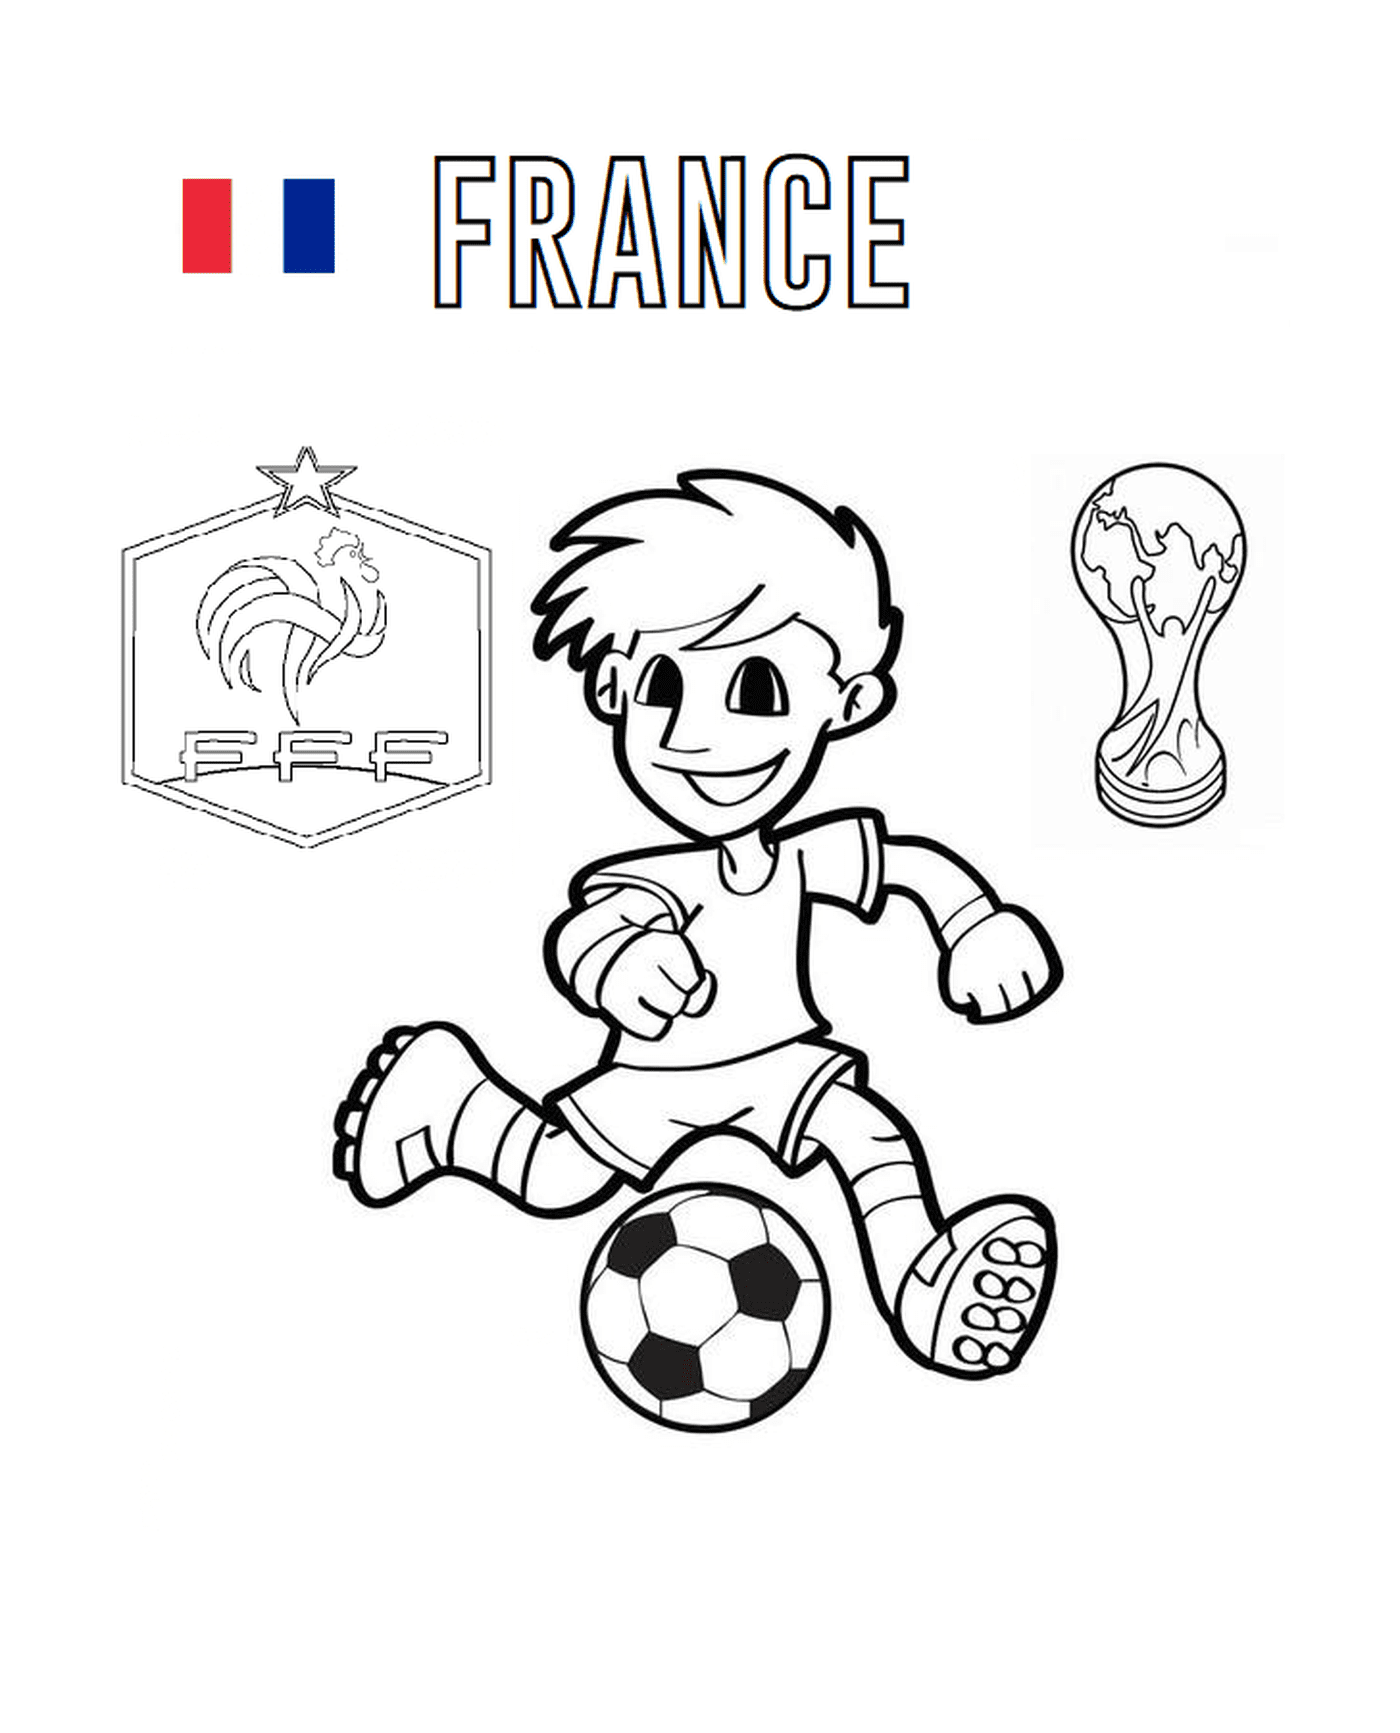   France, coupe du monde 2018 